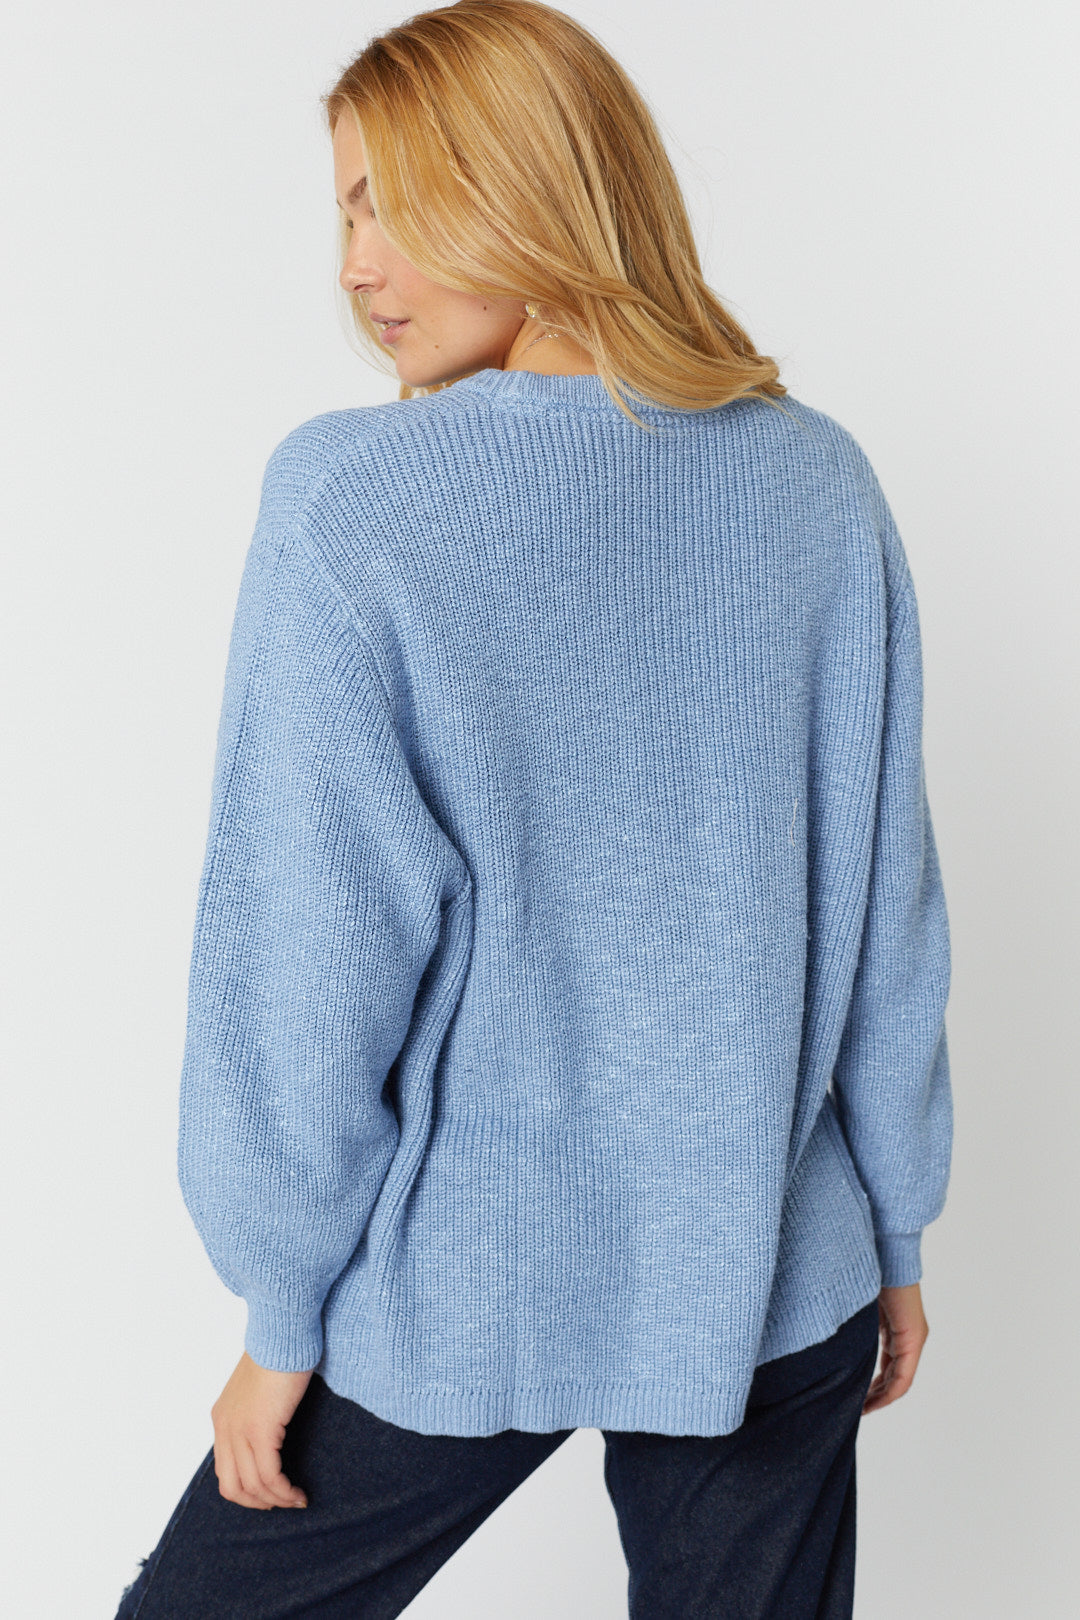 Pale blue long sleeve sweater | Melianne